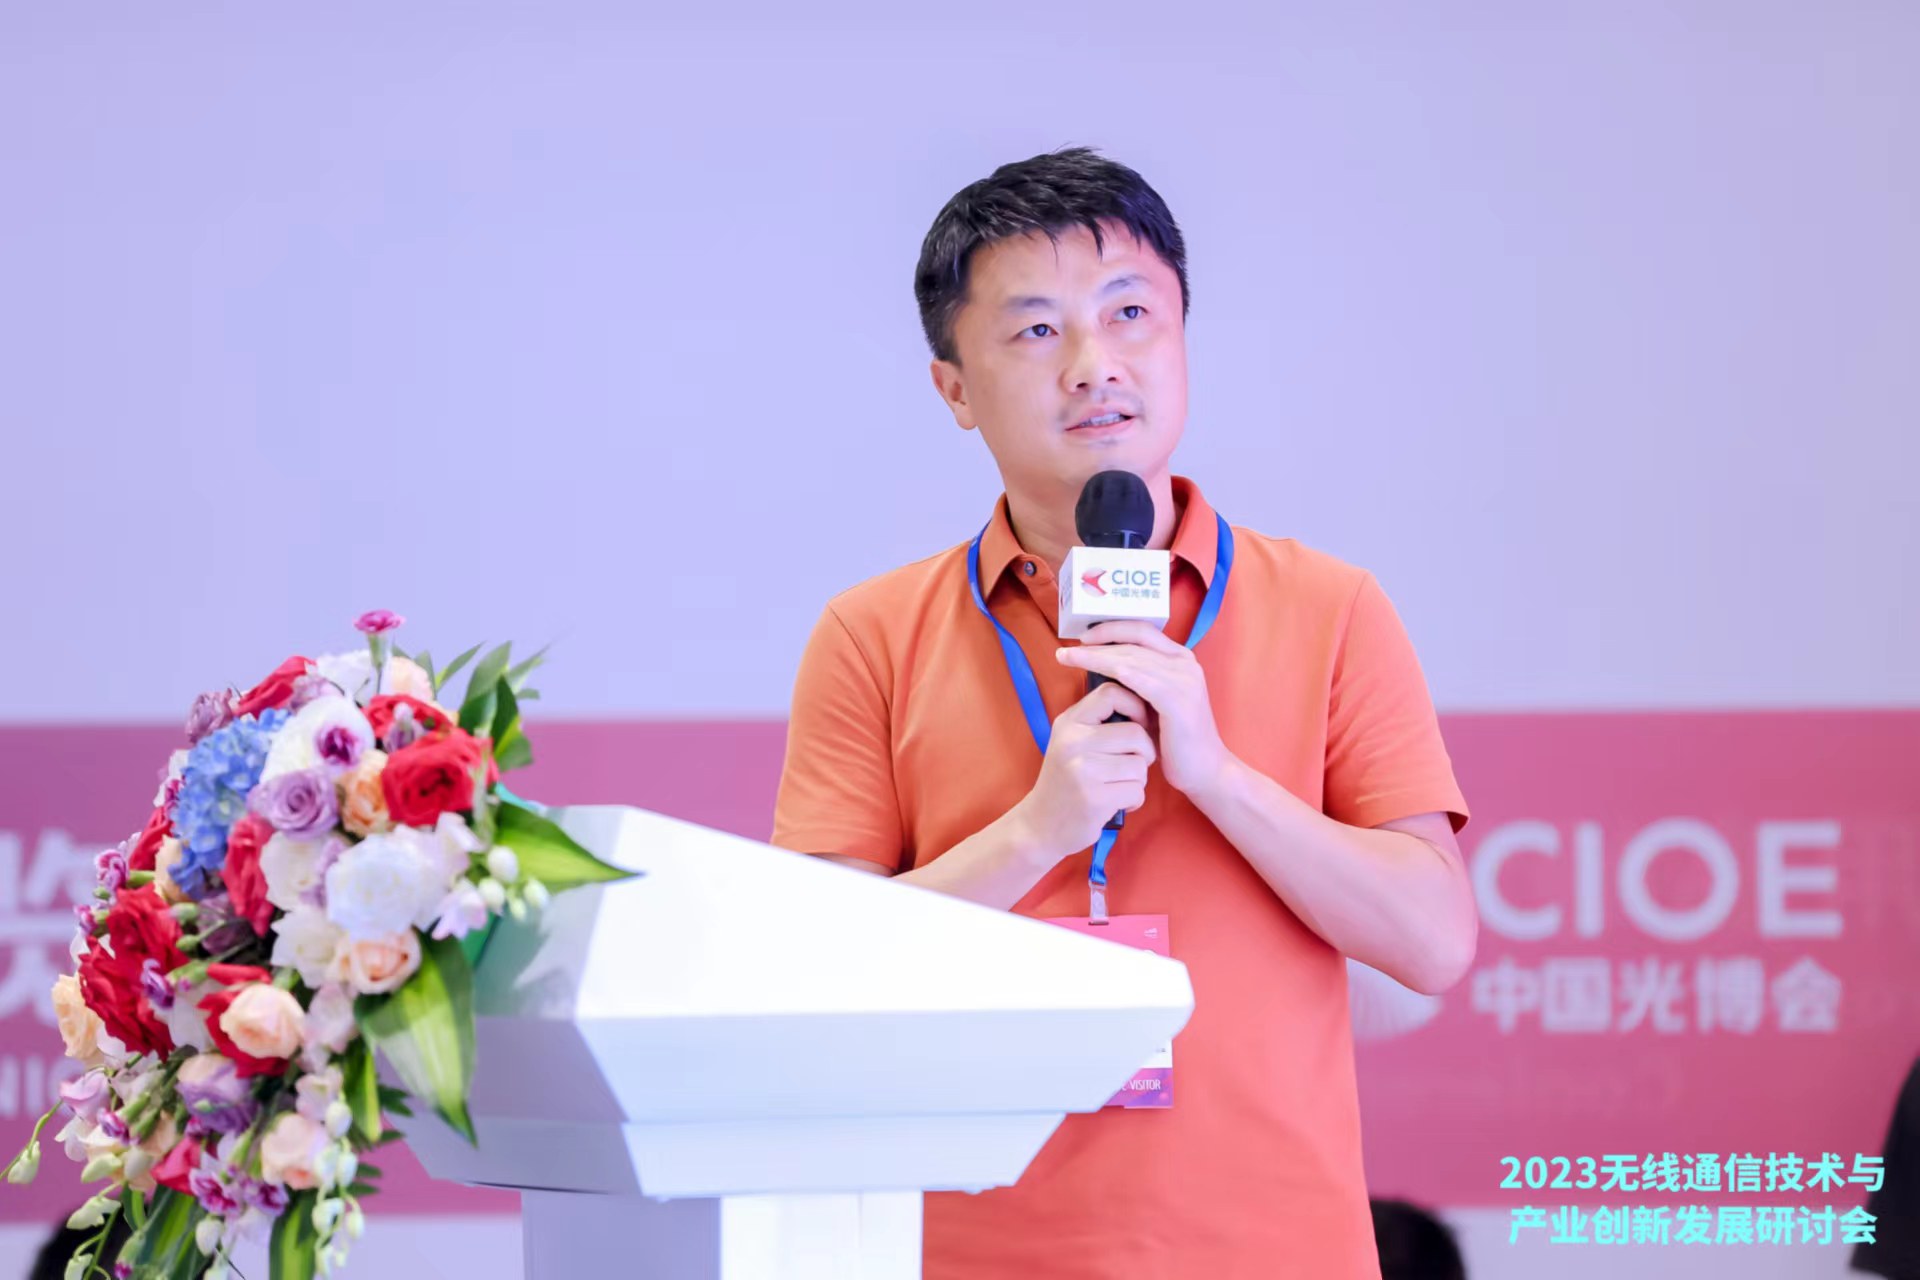 Qorvo 移动产品事业部 应用工程师经理 Will Jiang